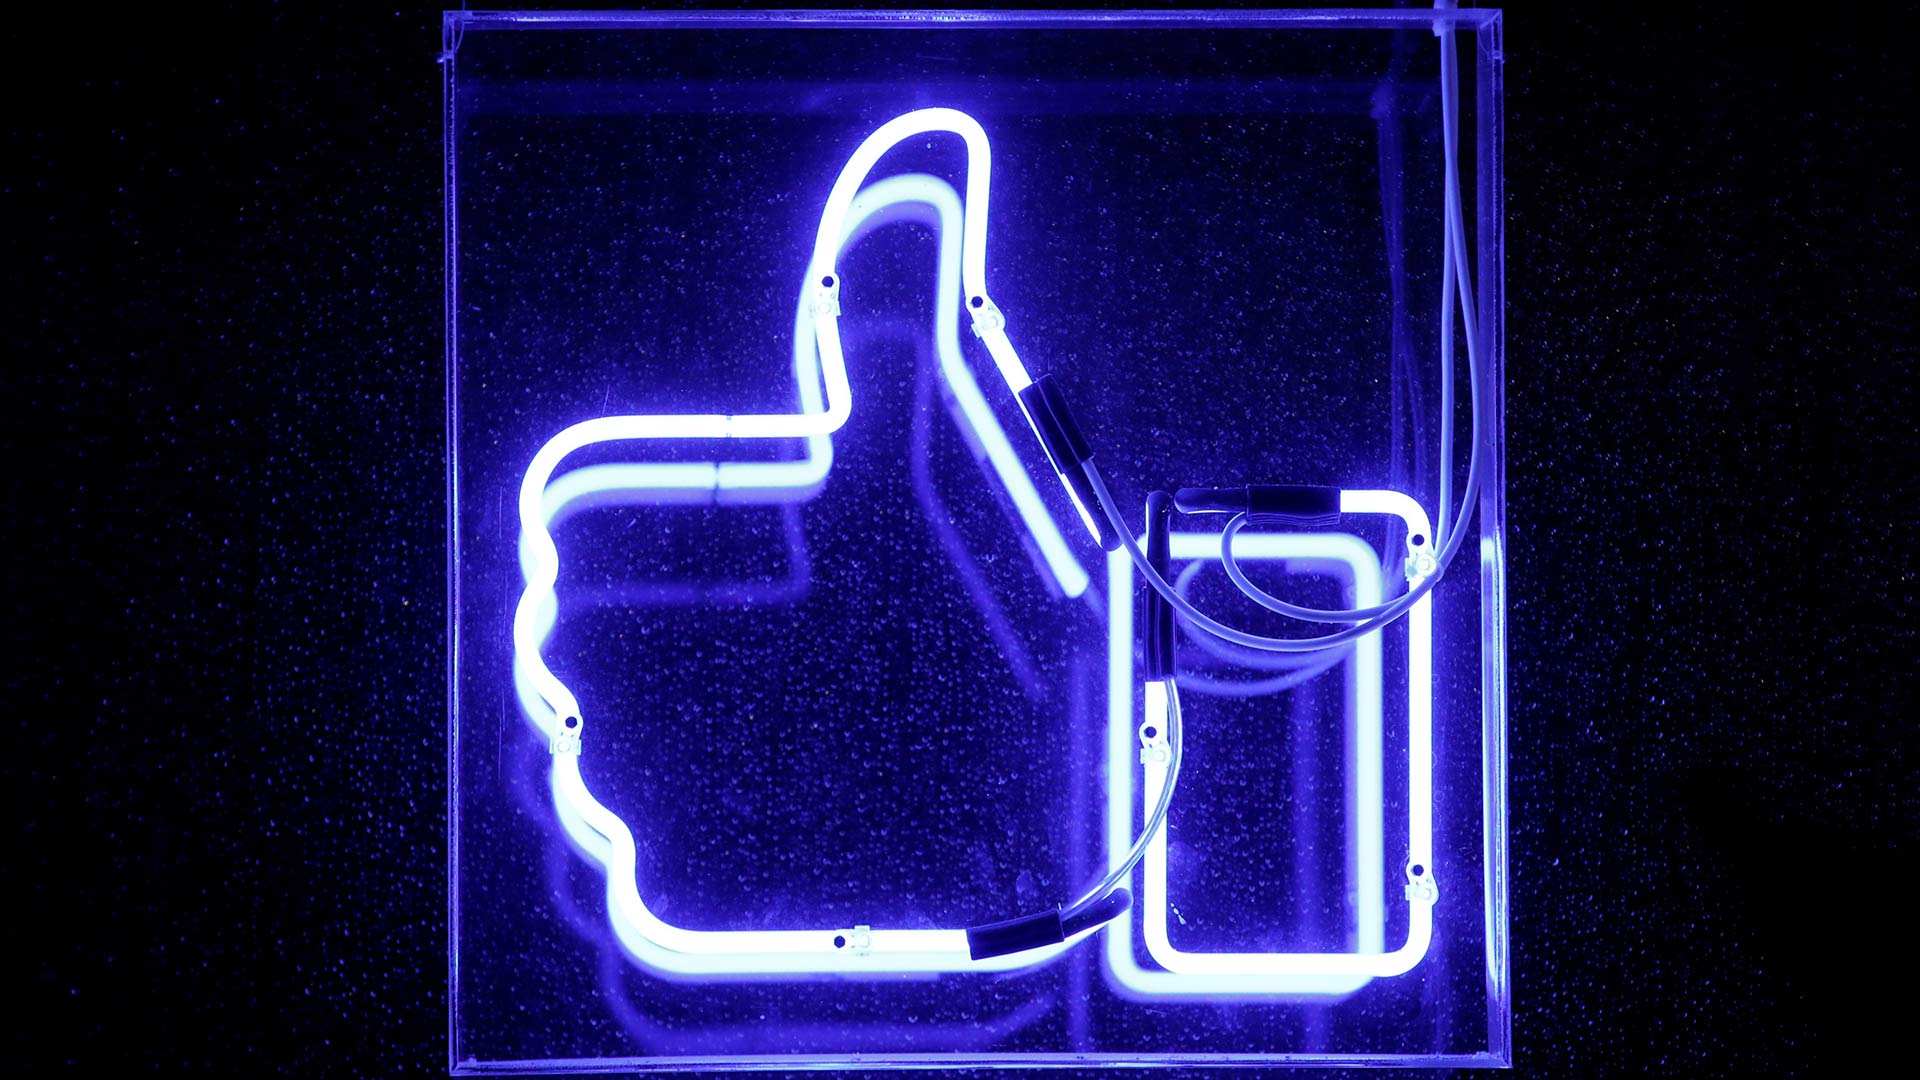 Un ex ejecutivo de Facebook dice que las redes sociales están destruyendo la sociedad